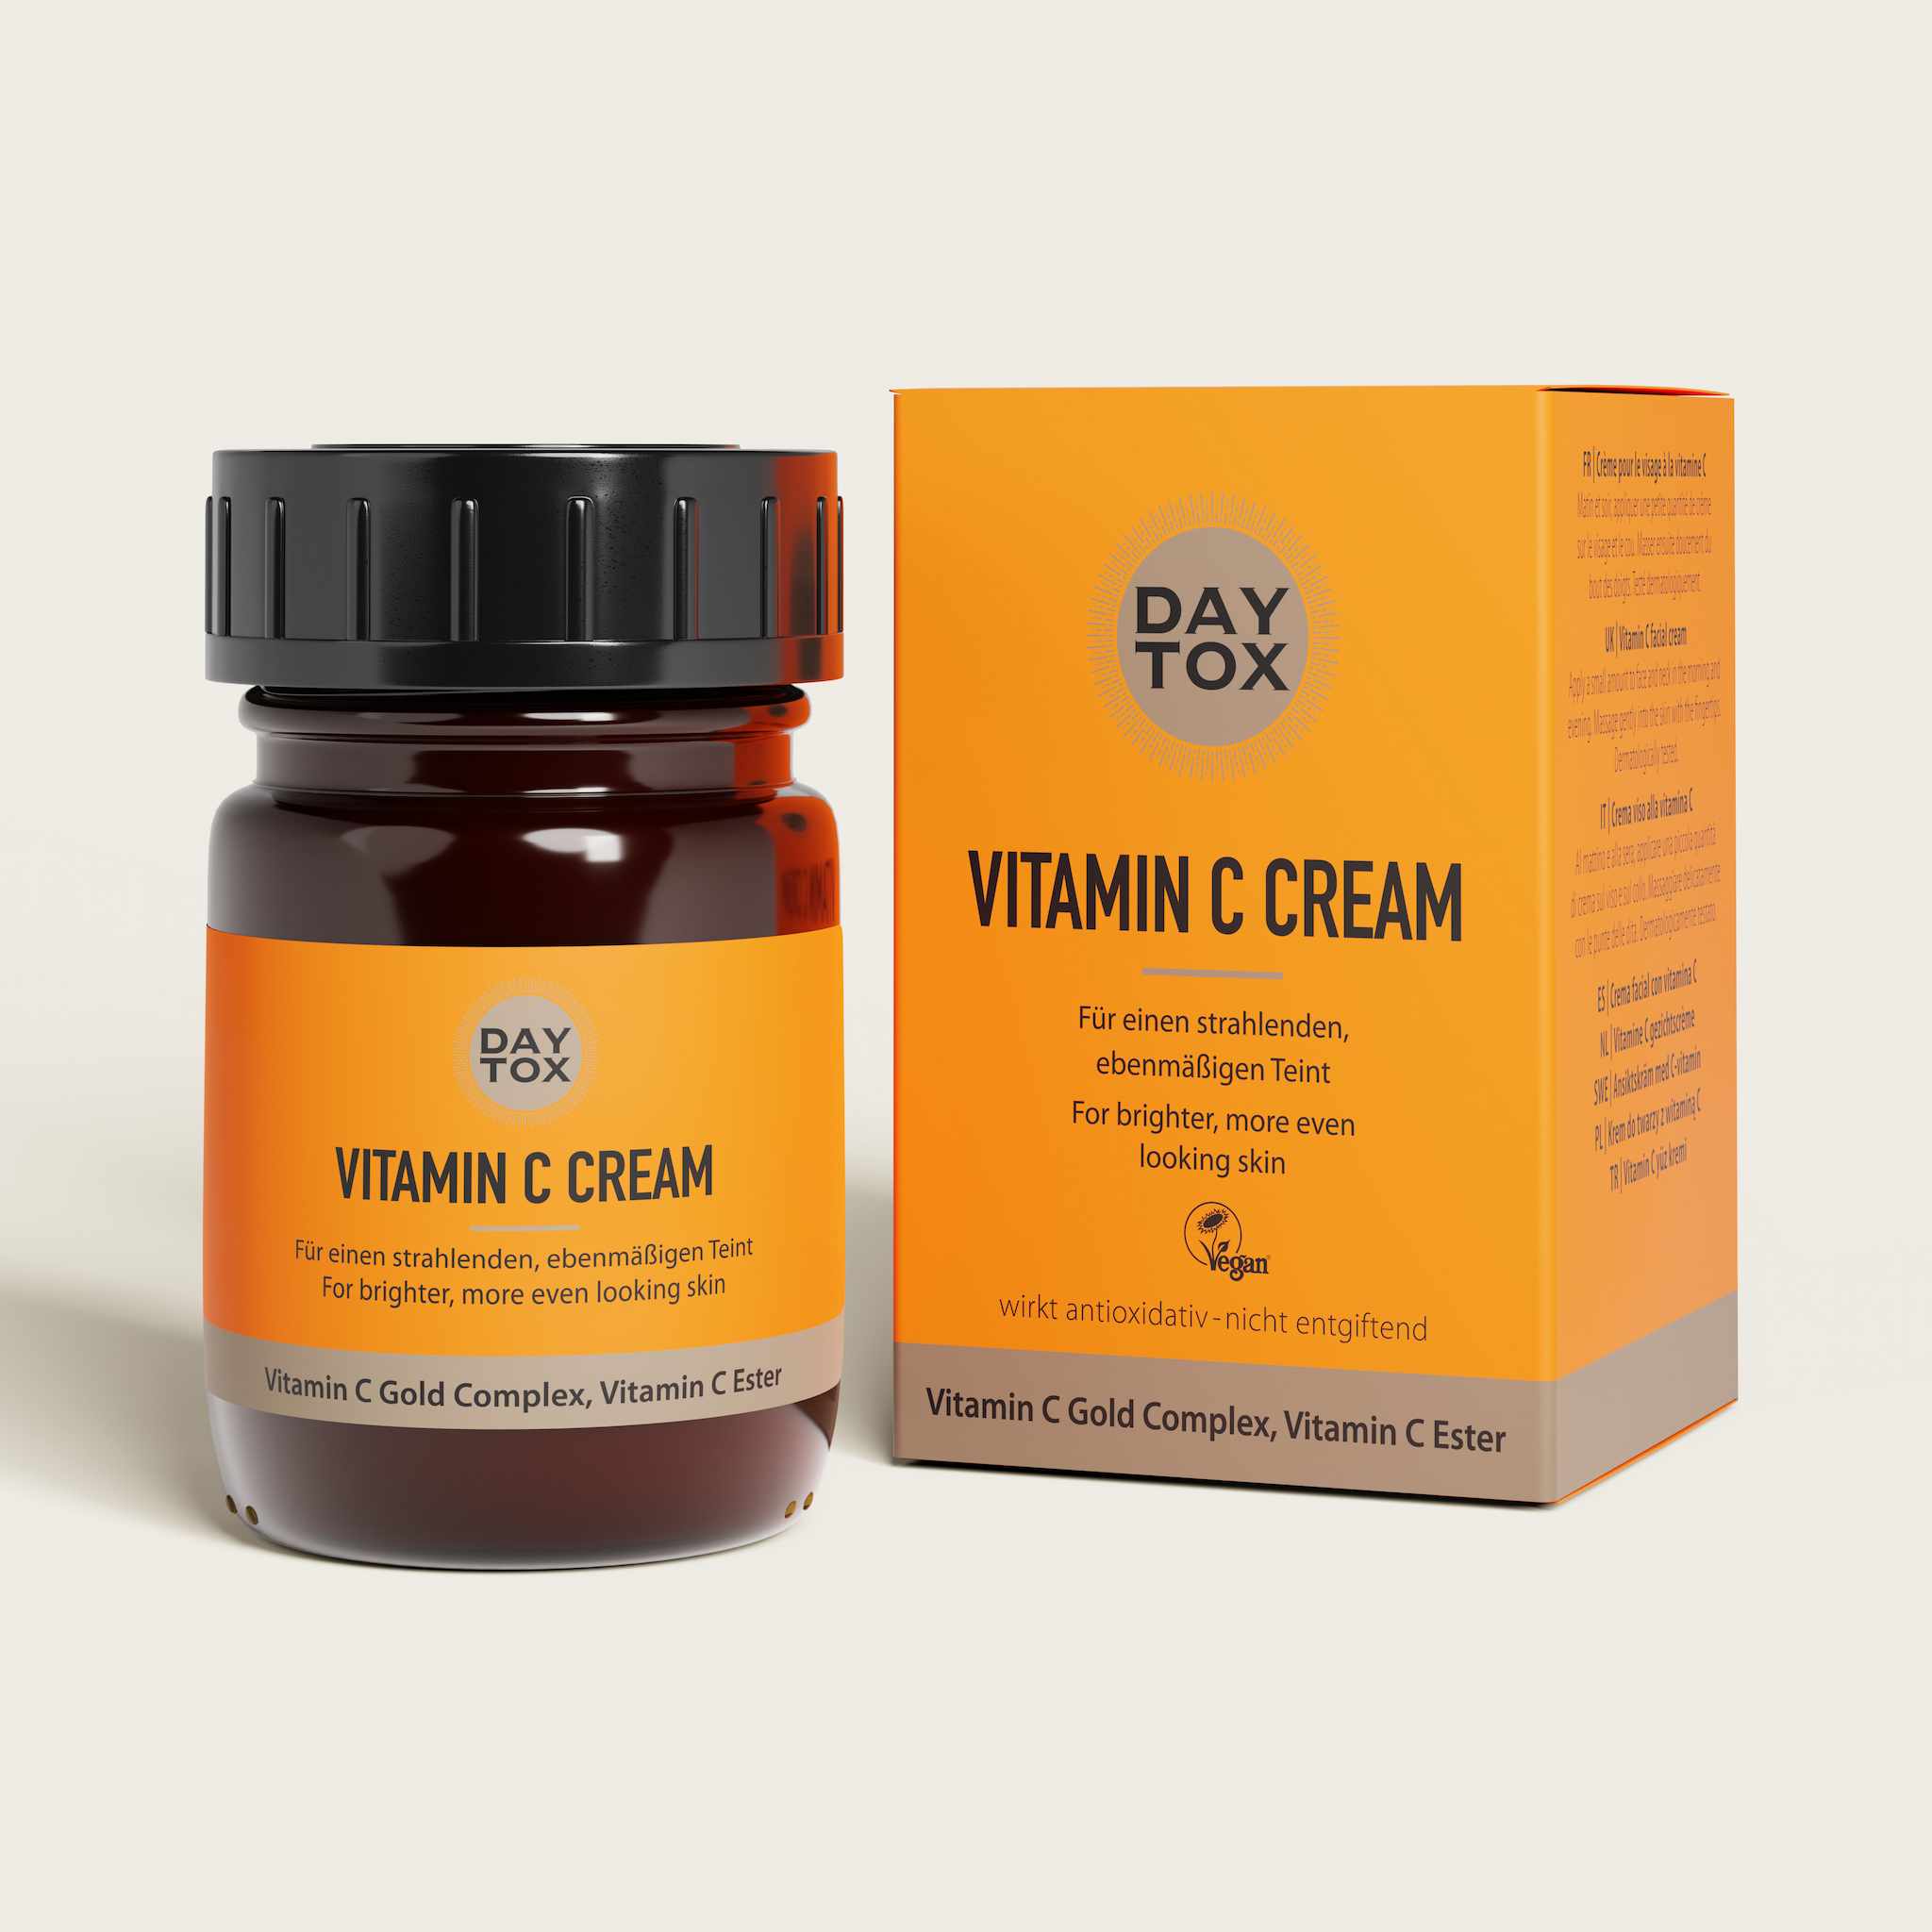 Vitamin C Cream